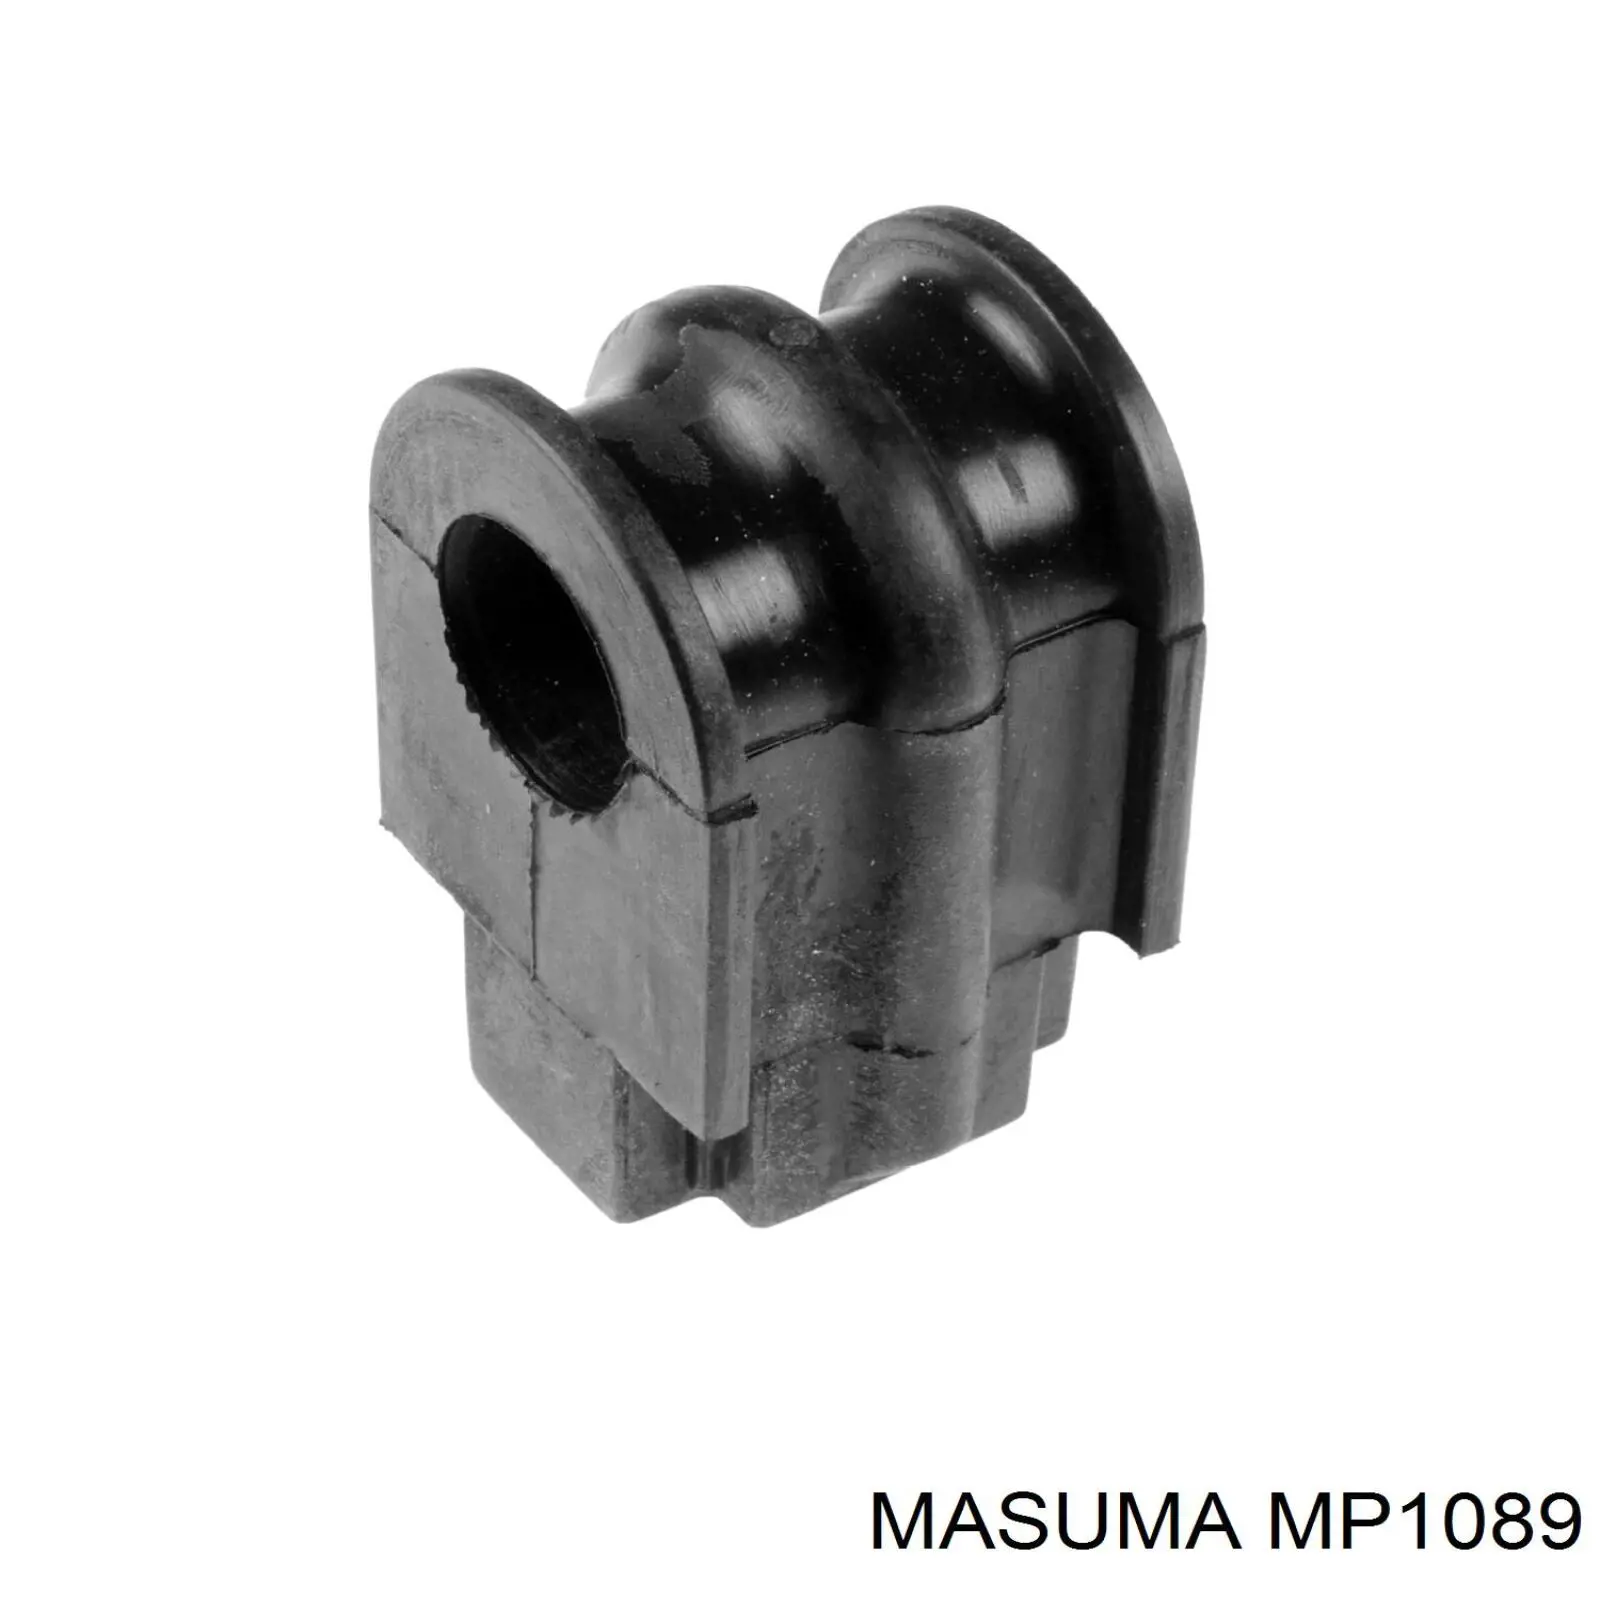 MP1089 Masuma casquillo de barra estabilizadora delantera